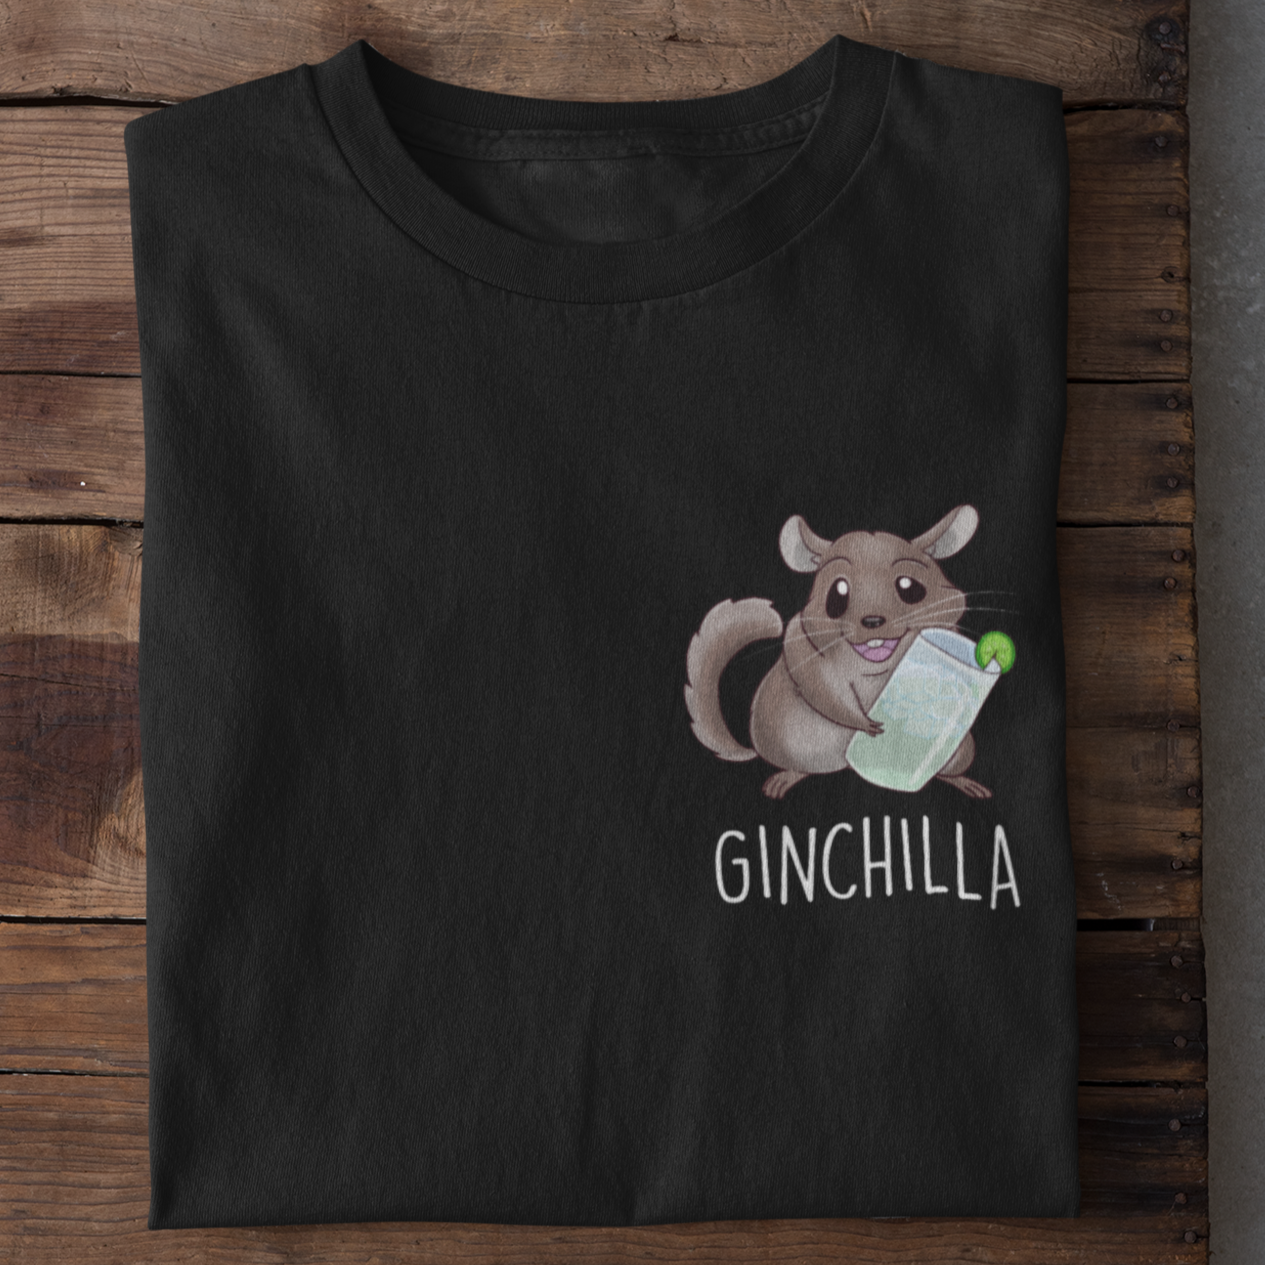 GINCHILLA - Premium Shirt Herren - Weinspirits